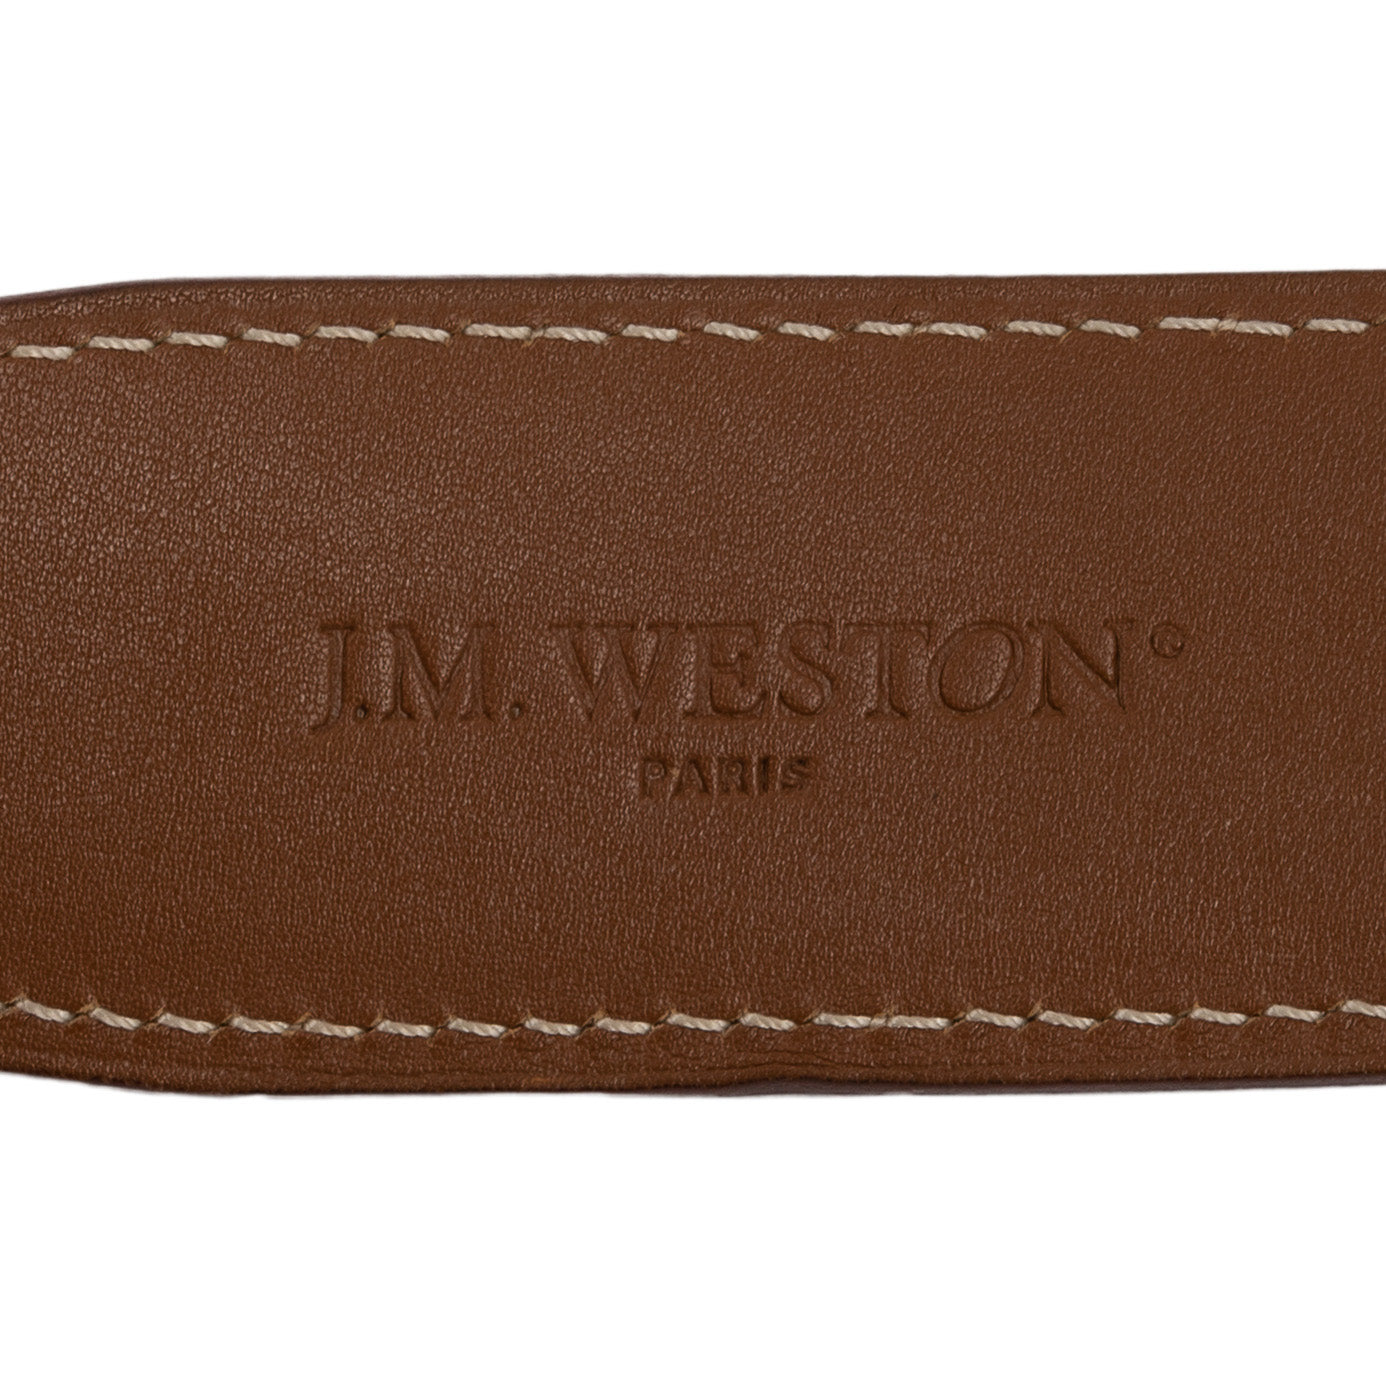 J.M. WESTON Paris Brown Leather Belt 90 cm 36